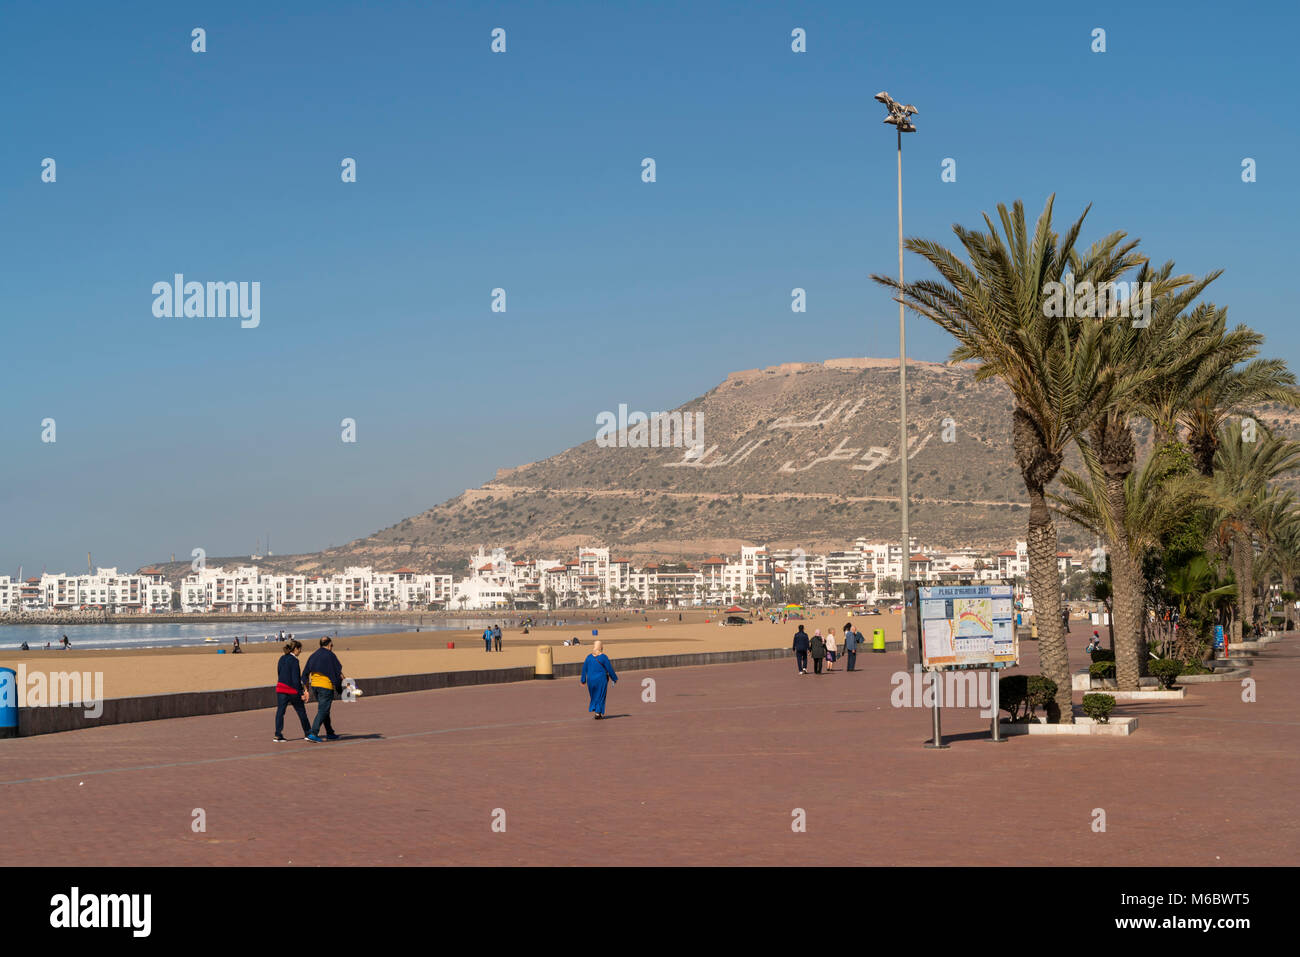 Promenade und Strand in Agadir, Königreich Marokko, Afrika | Promenade und der Strand in Agadir, Königreich Marokko, Afrika Stockfoto